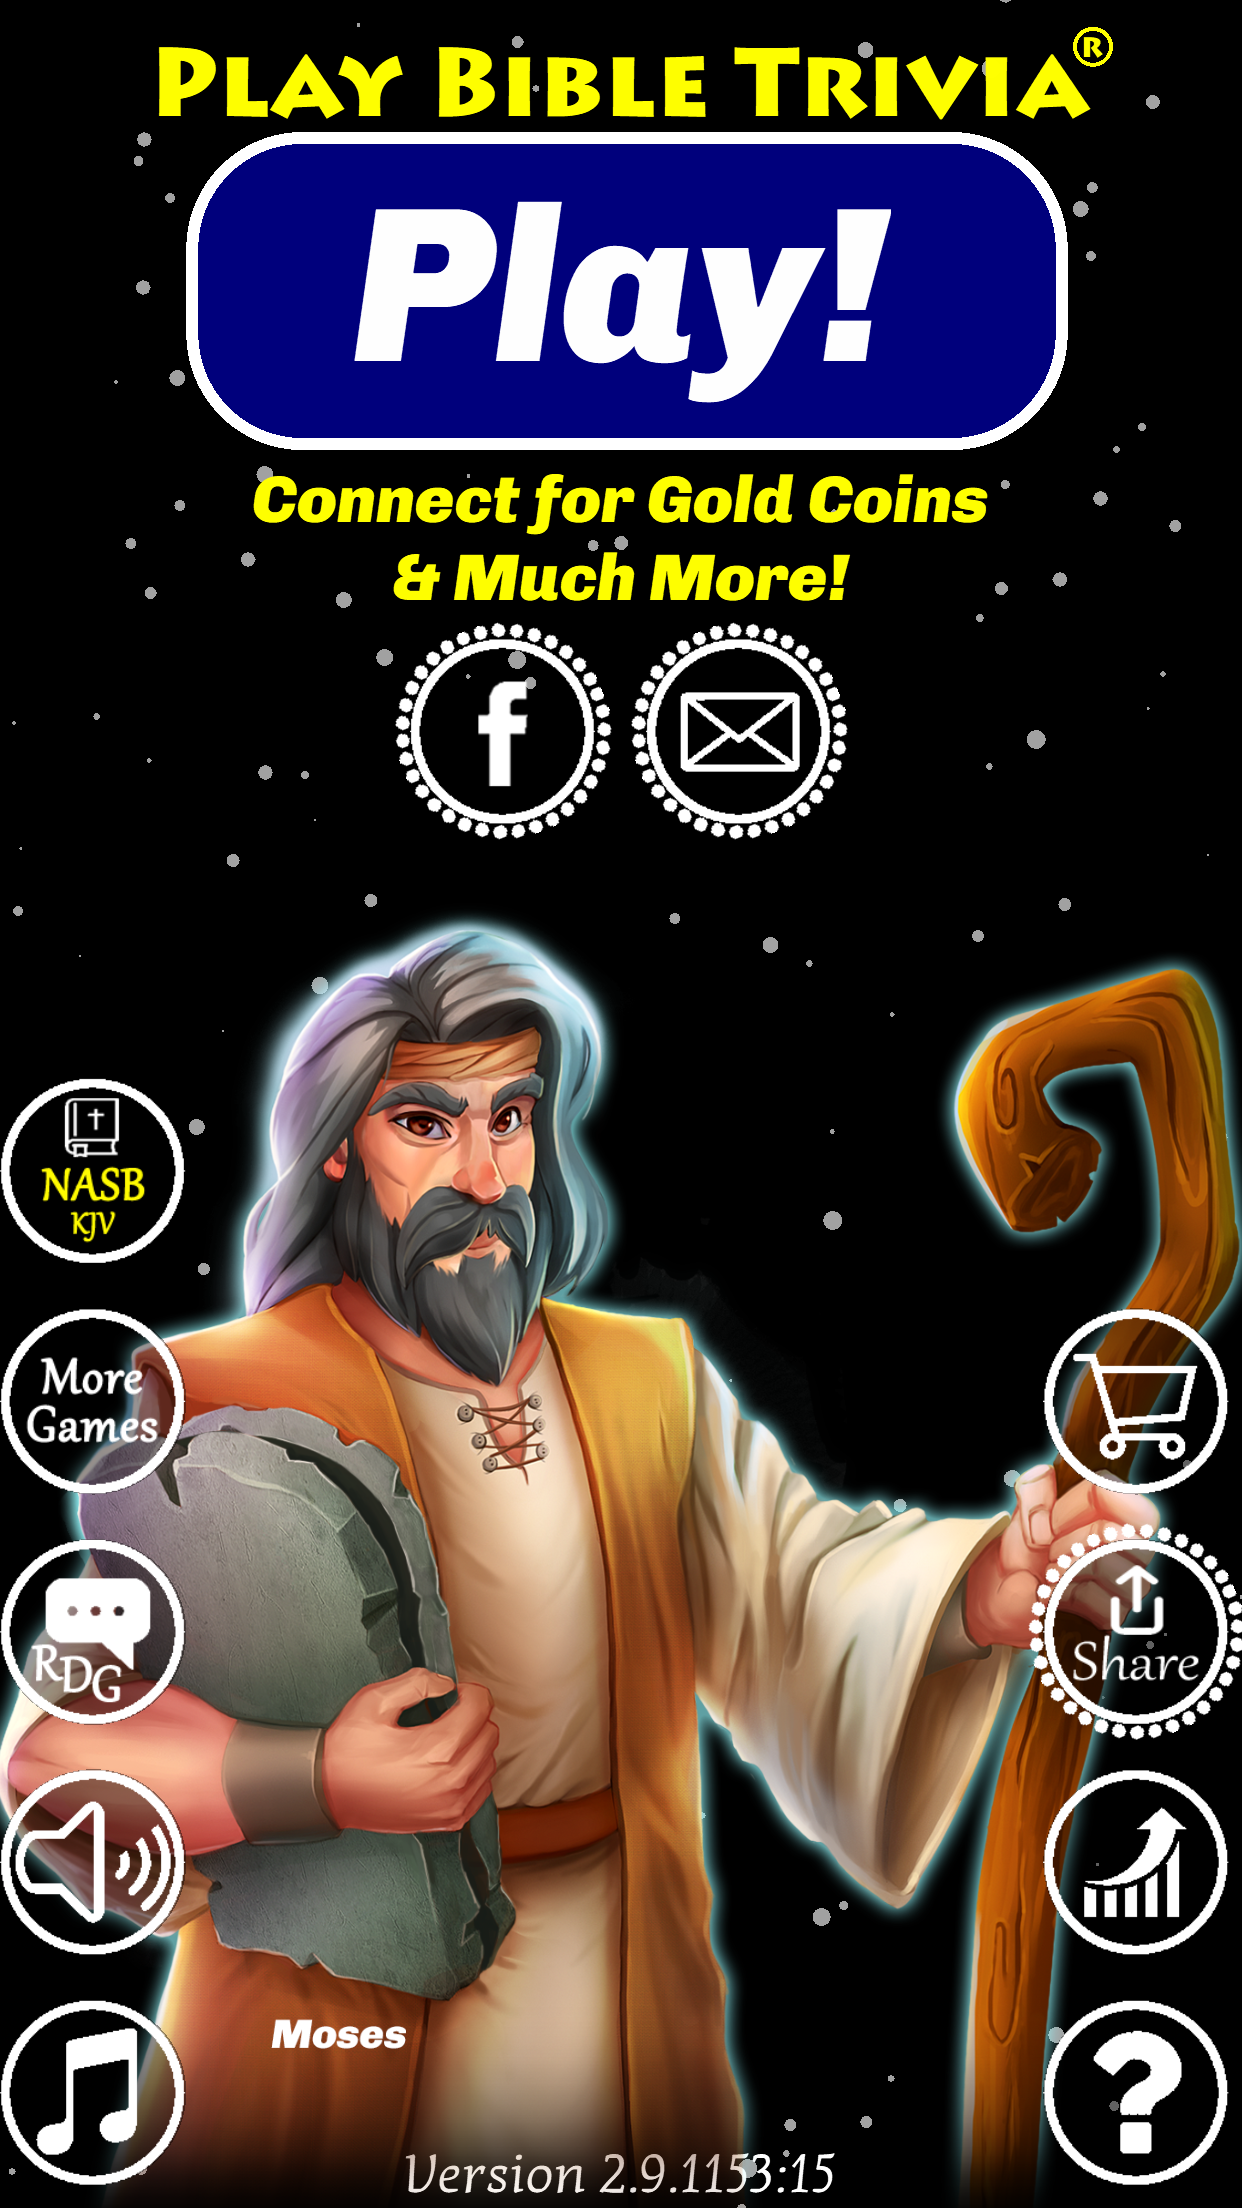 Jesus Bible Trivia Games Quiz